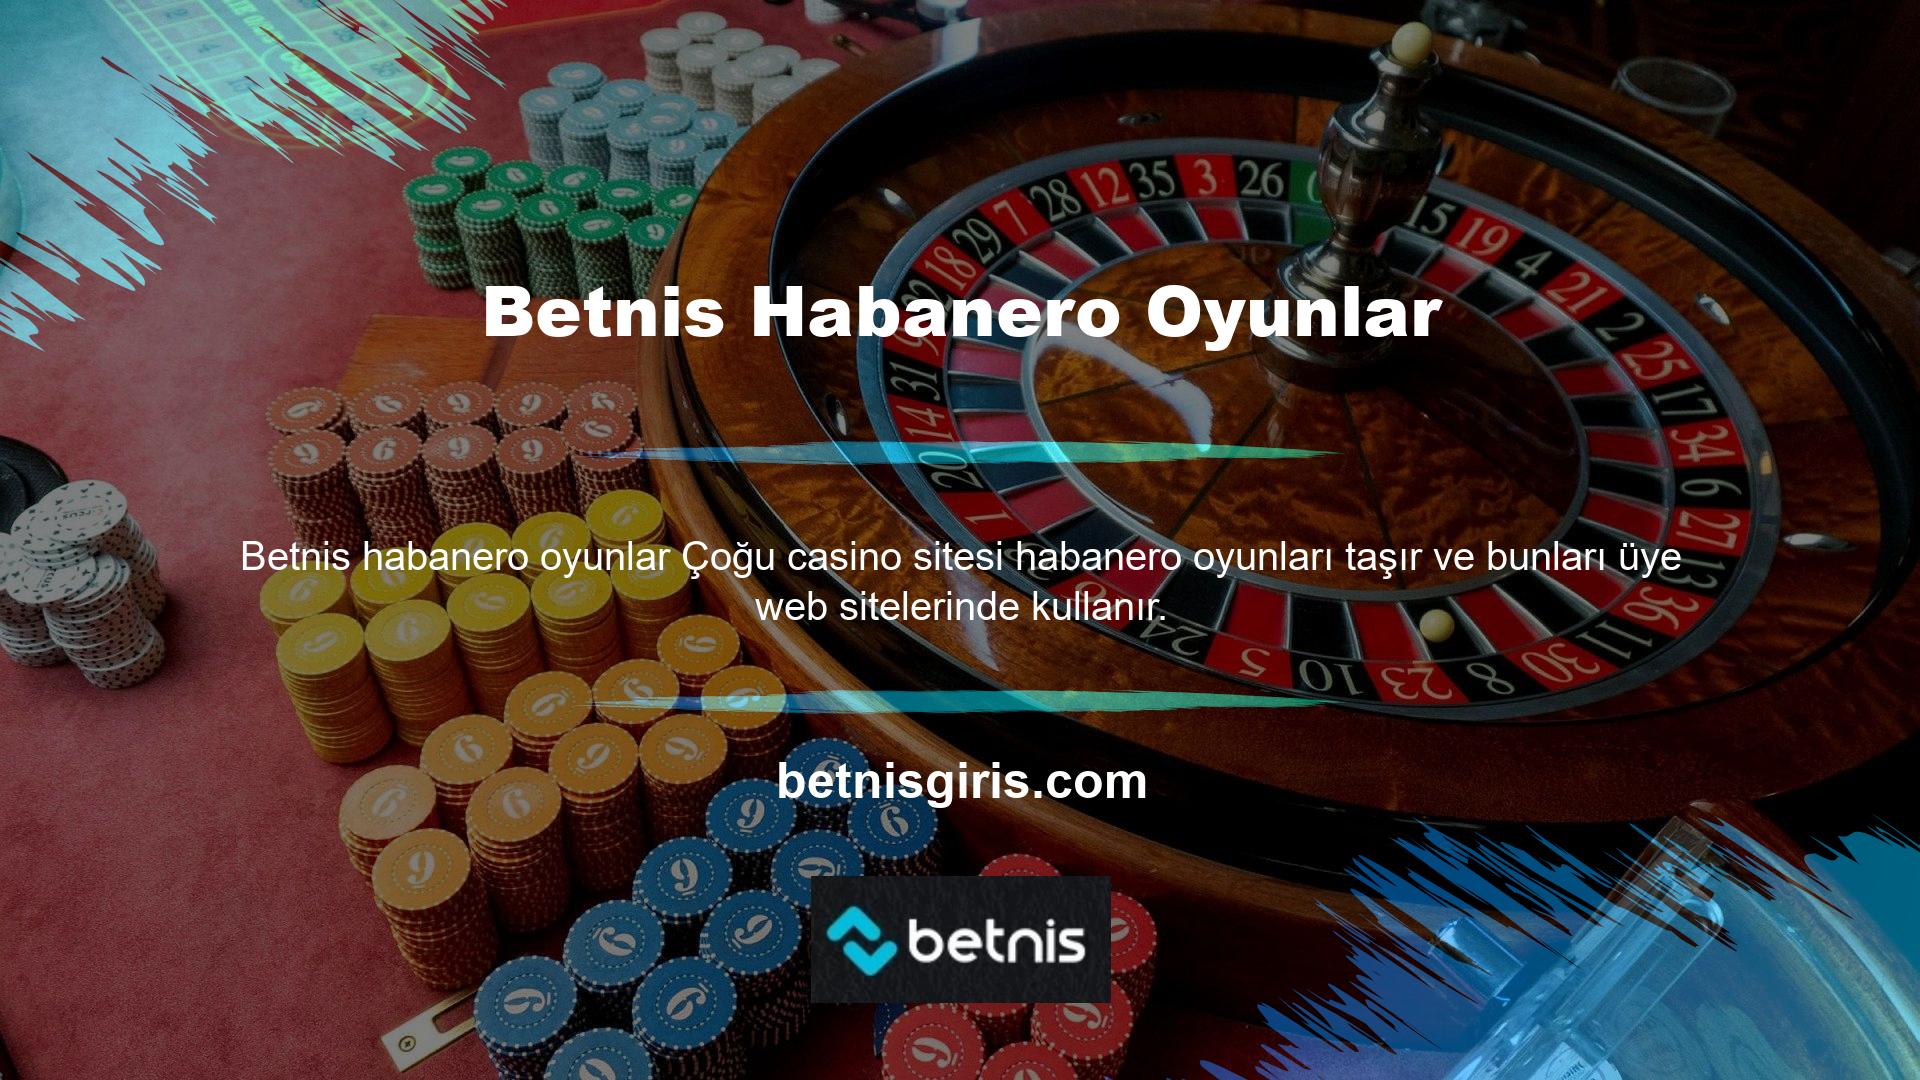 Betnis sitesi, kurumsal casino büyük ilgi gösteren bahis sitelerinden biridir